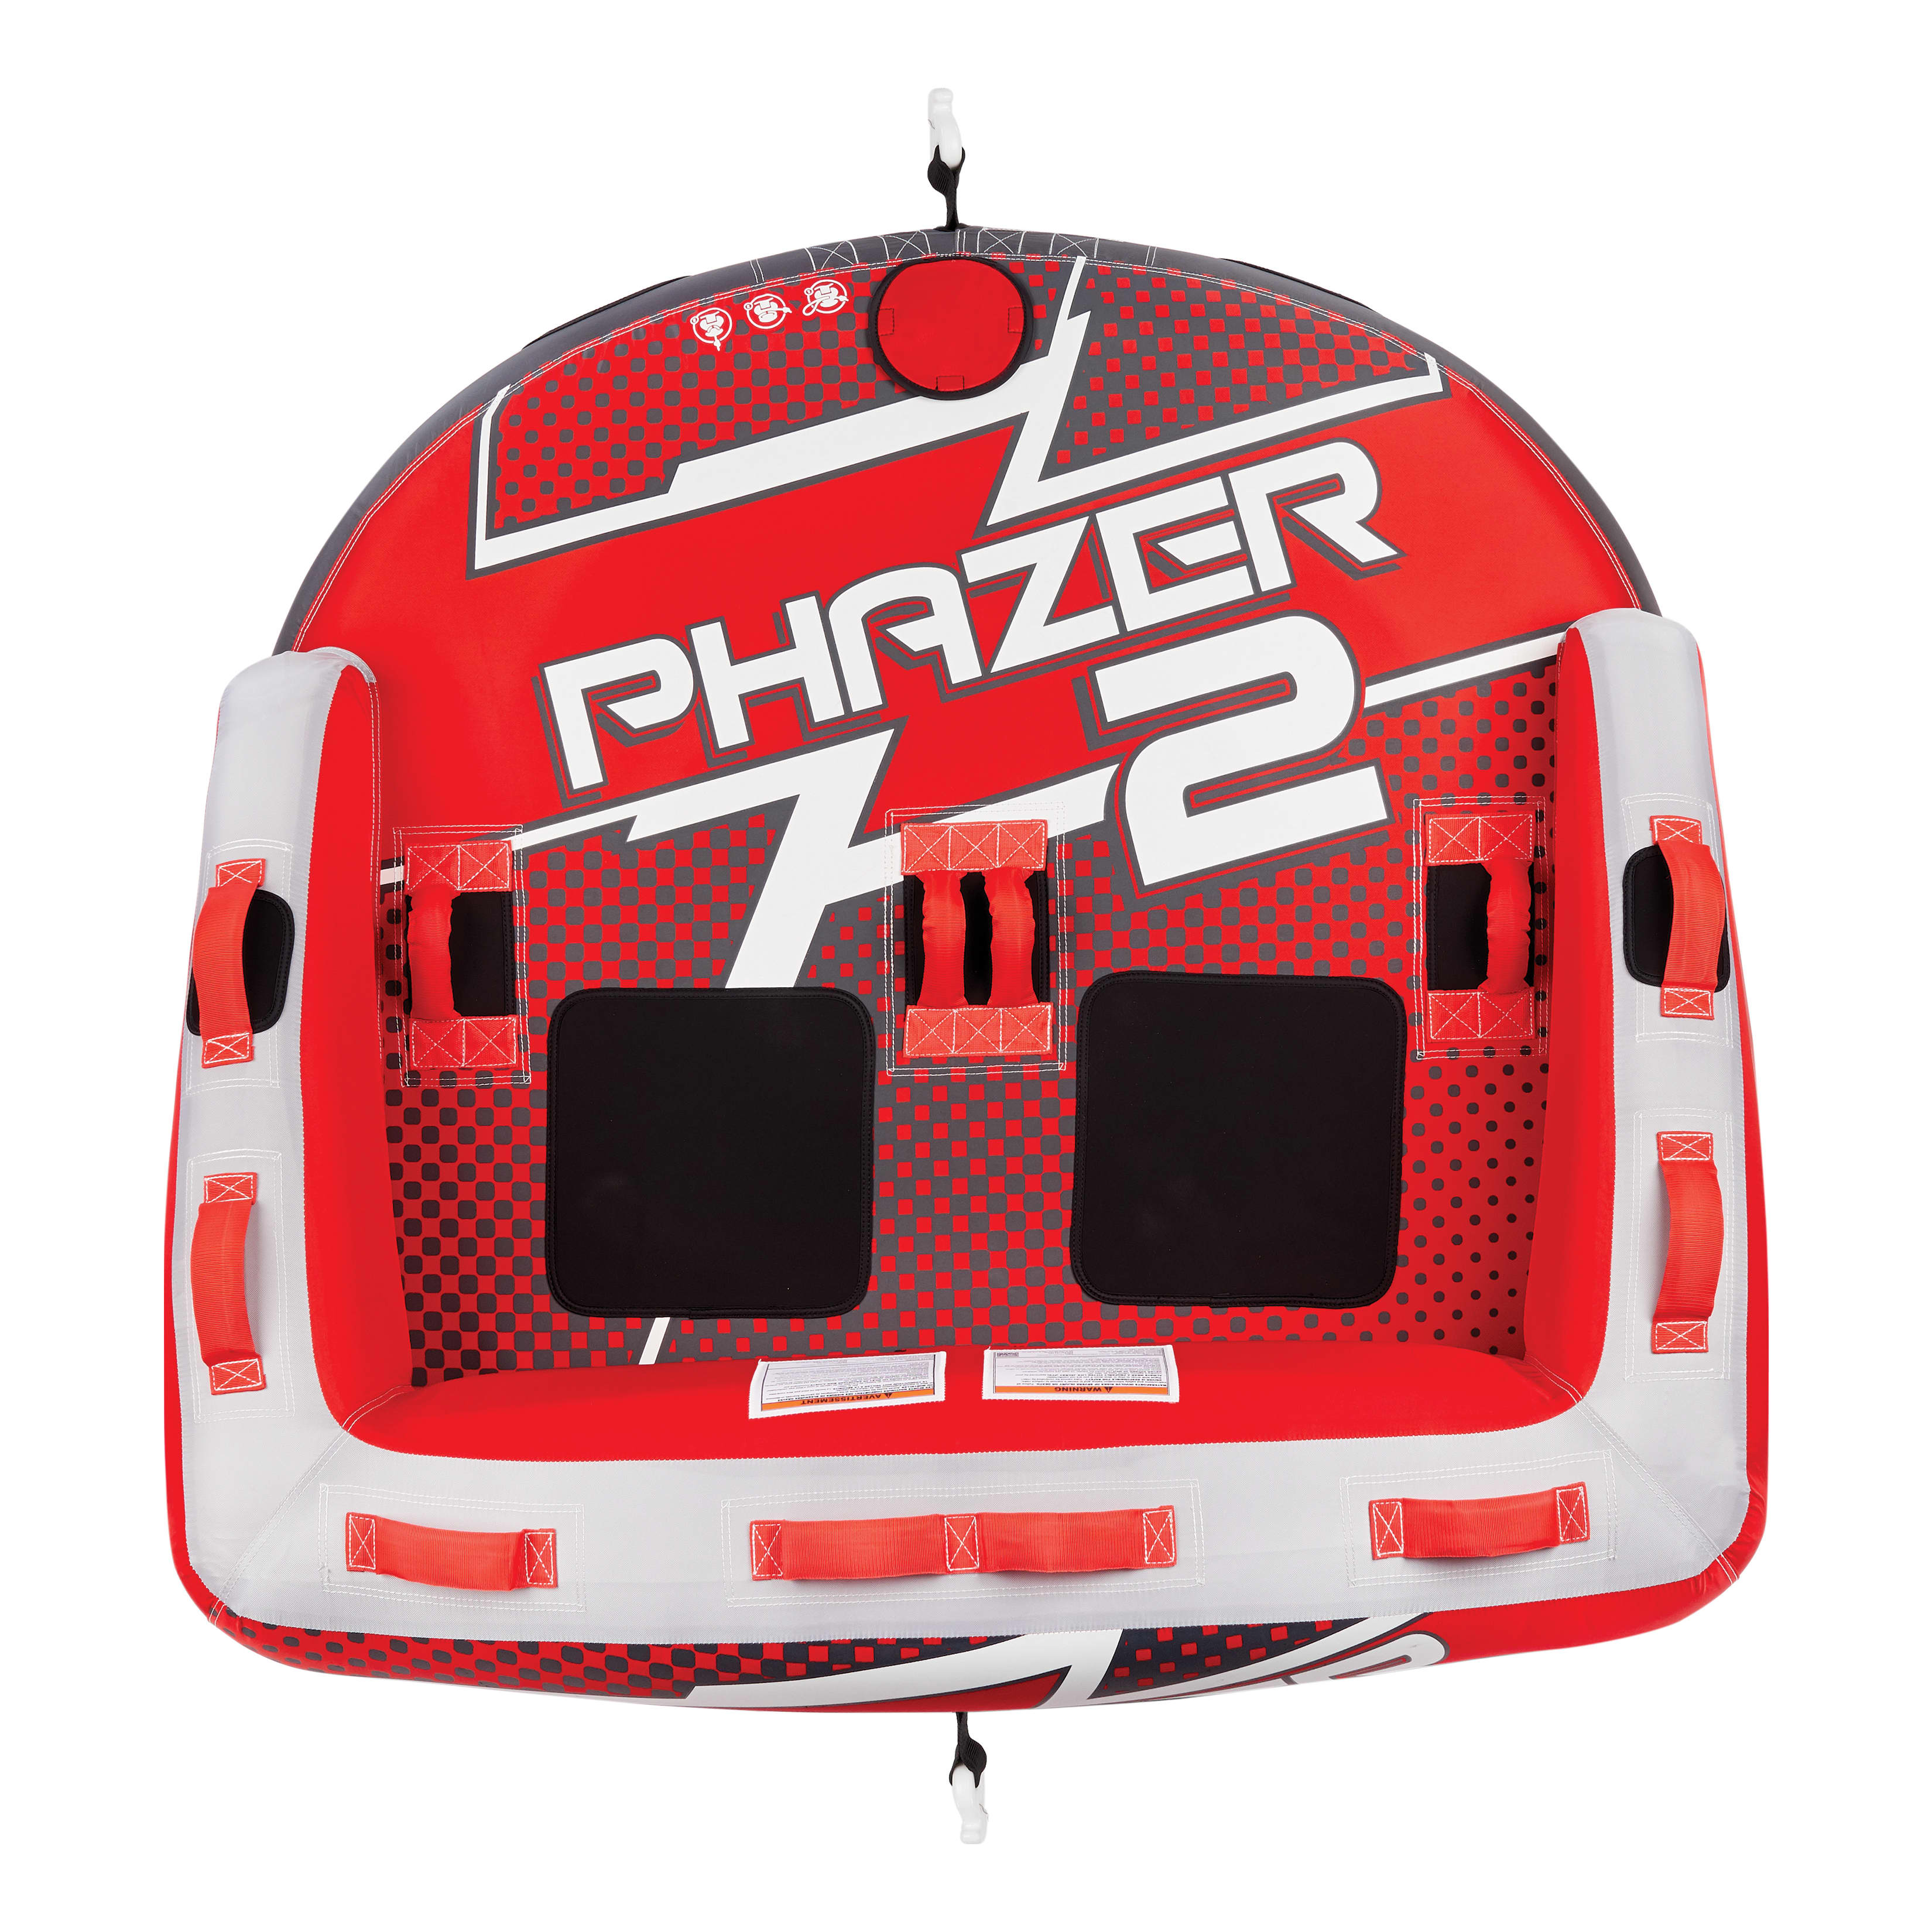 XPS Phazer 2 Two-Rider Towable Tube